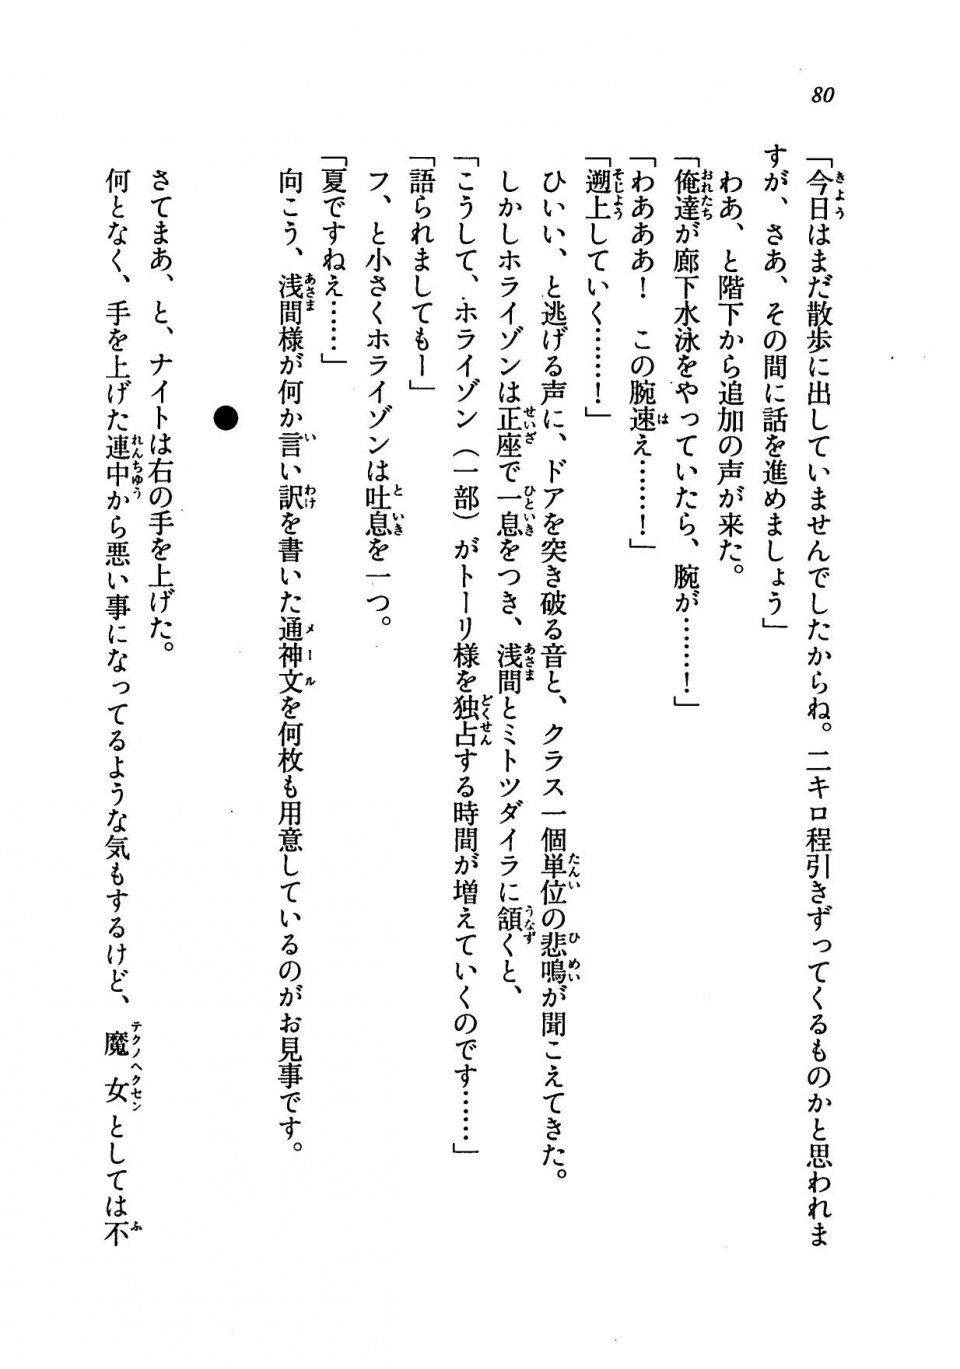 Kyoukai Senjou no Horizon LN Vol 19(8A) - Photo #80